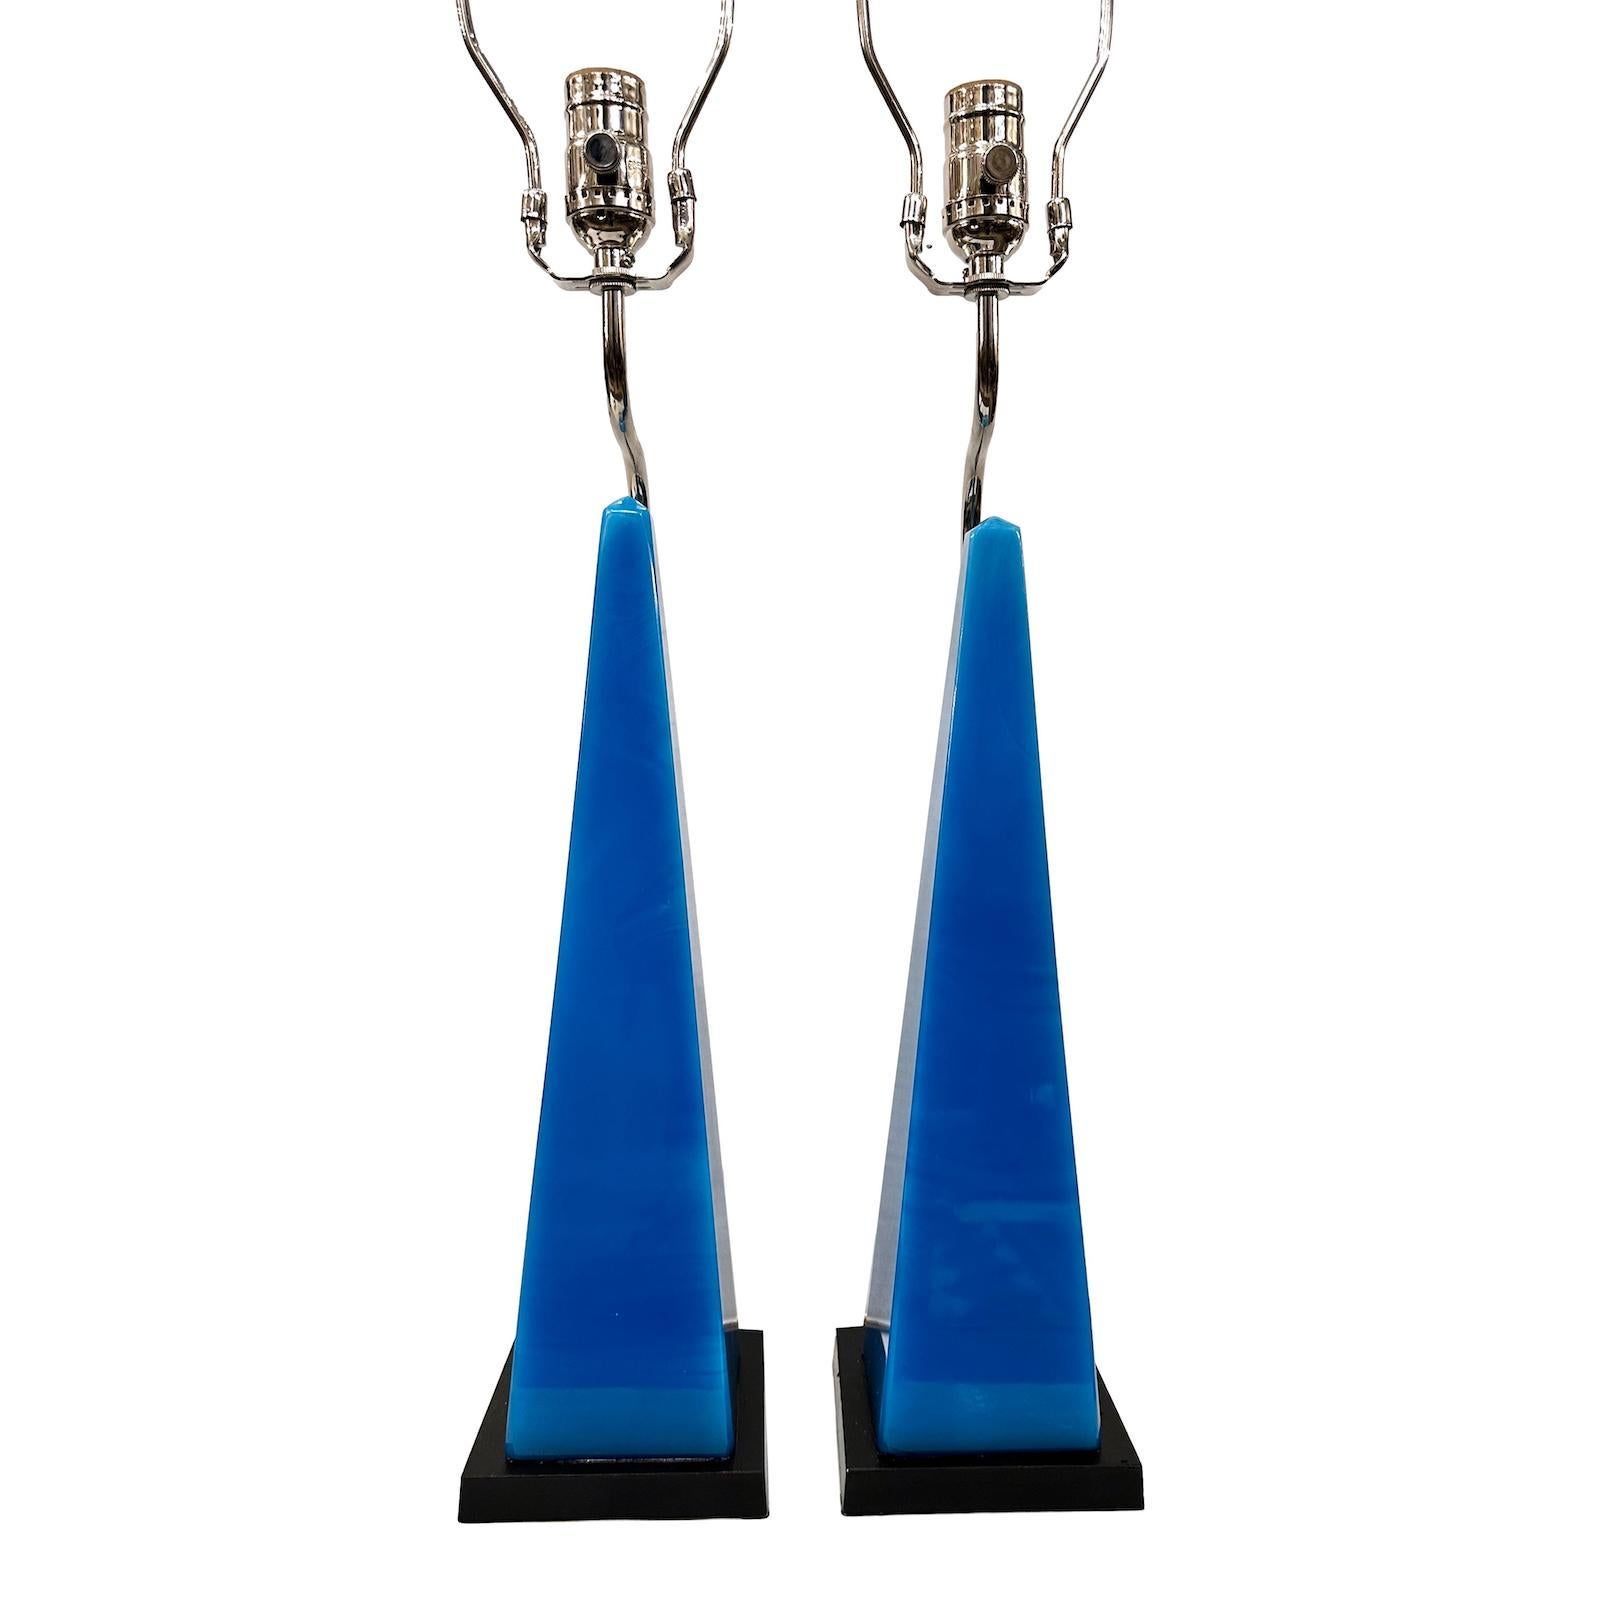 Zwei französische Obelisken aus blauem Glas aus den 1950er Jahren, die als Lampen montiert sind.

Abmessungen:
Höhe des Körpers: 18″.
Höhe bis zur Schirmauflage: 30″.
Sockel: 5″ x 5″